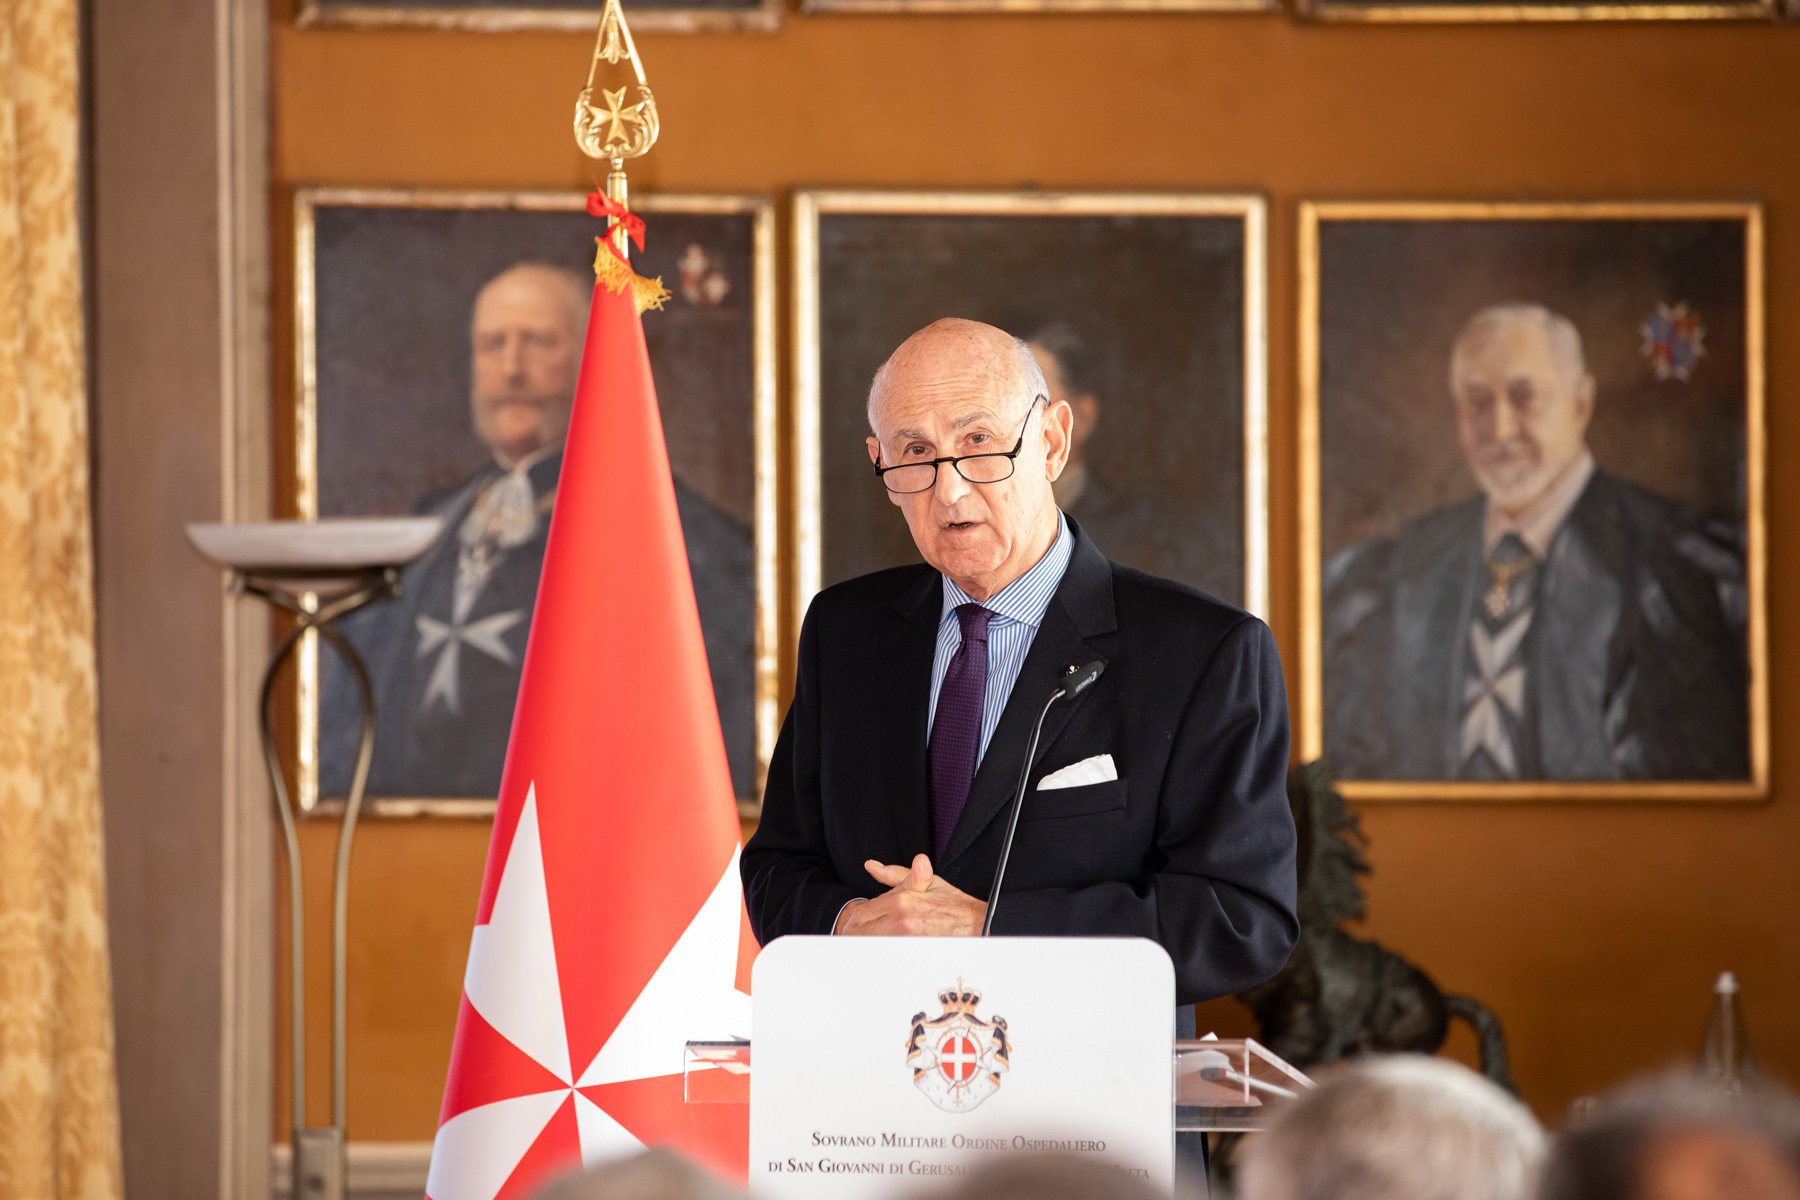 Les principaux engagements de l’Ordre de Malte au centre de la rencontre avec les diplomates accrédités